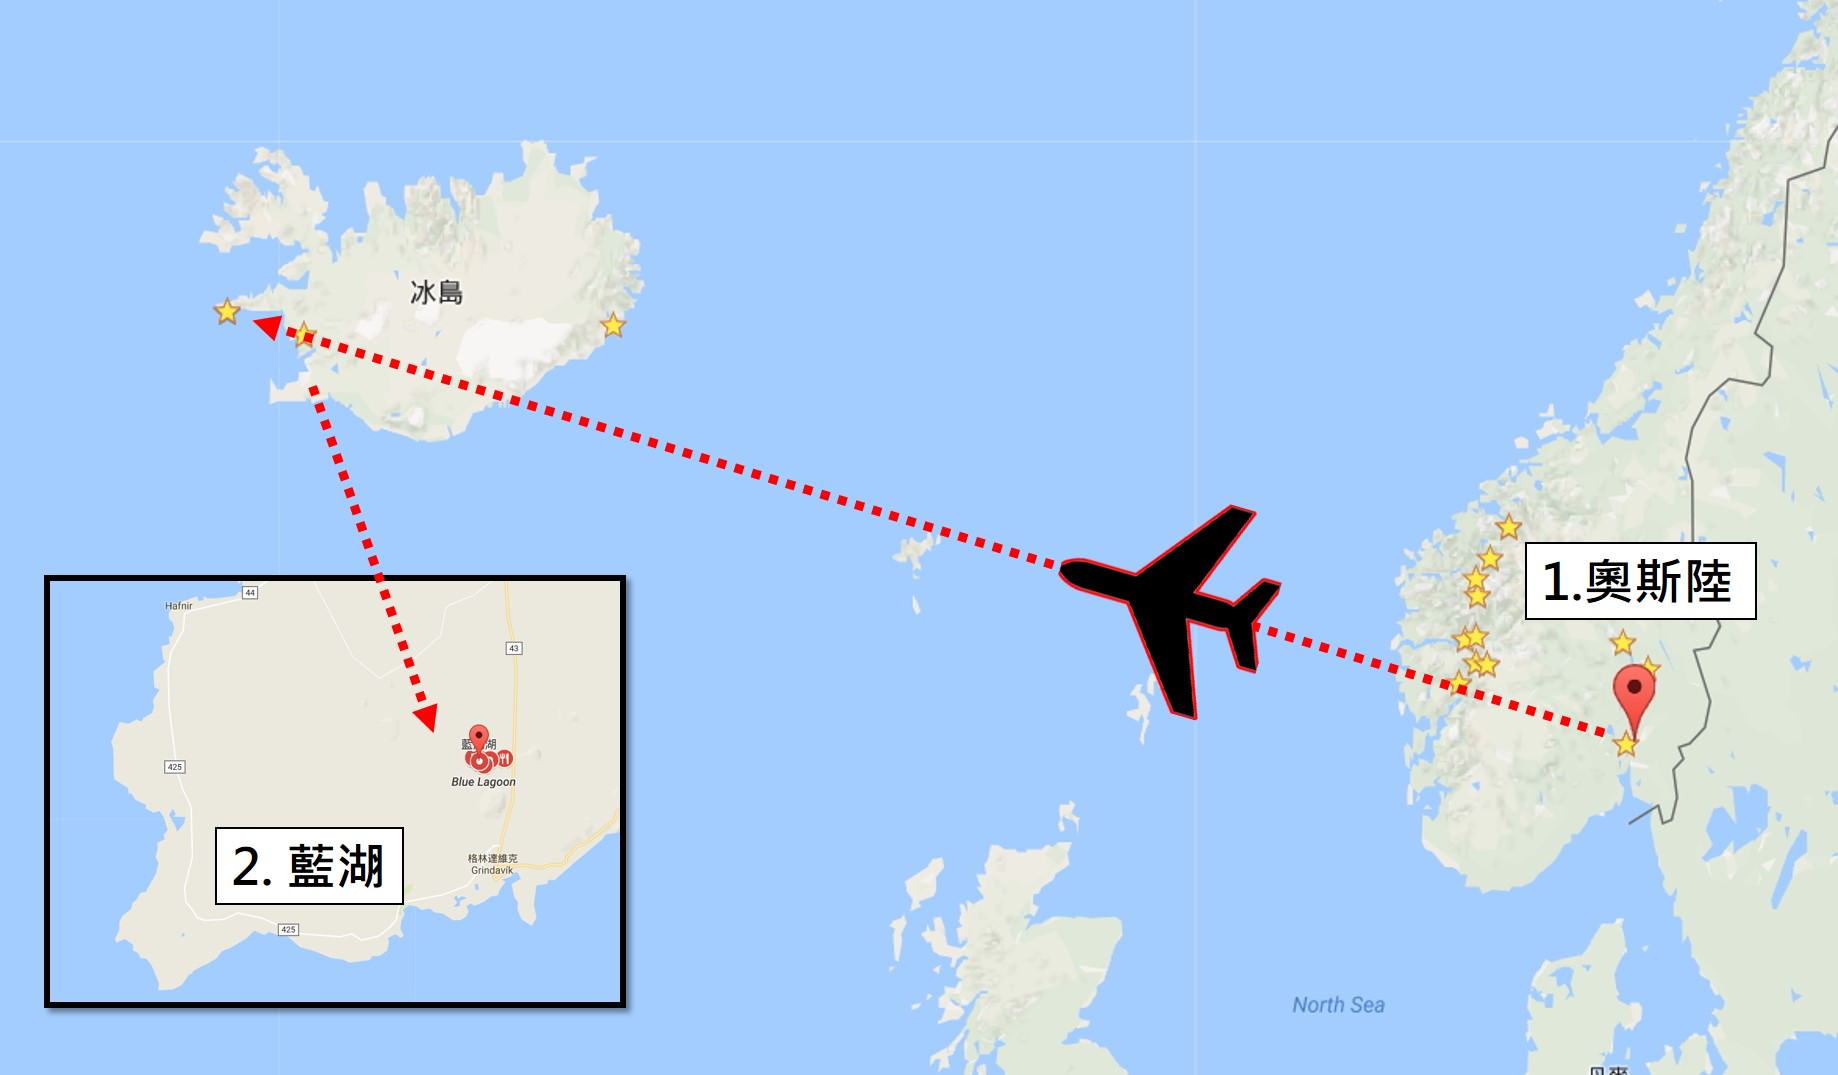 [巨大旅遊] 北歐五國 17 日旅程第 08 日 – 冰島雷克雅維克、藍湖 BLUE LAGOON